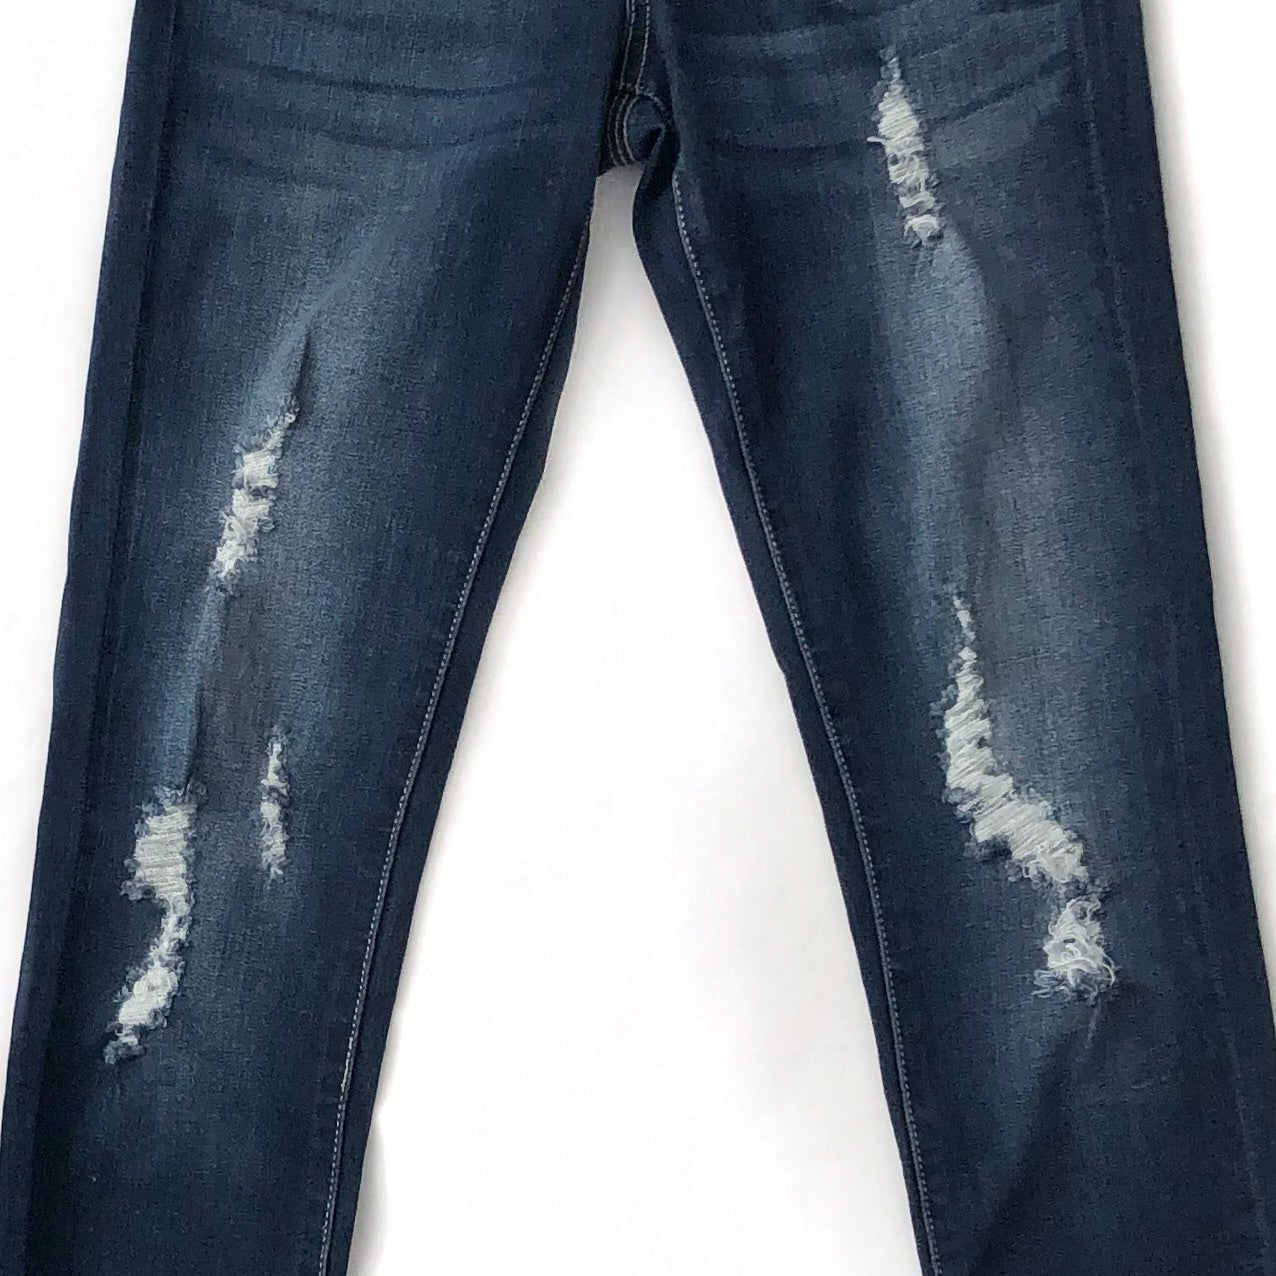 KanCan Favorite Distressed High Waist Button Up Jeans - Dark Wash